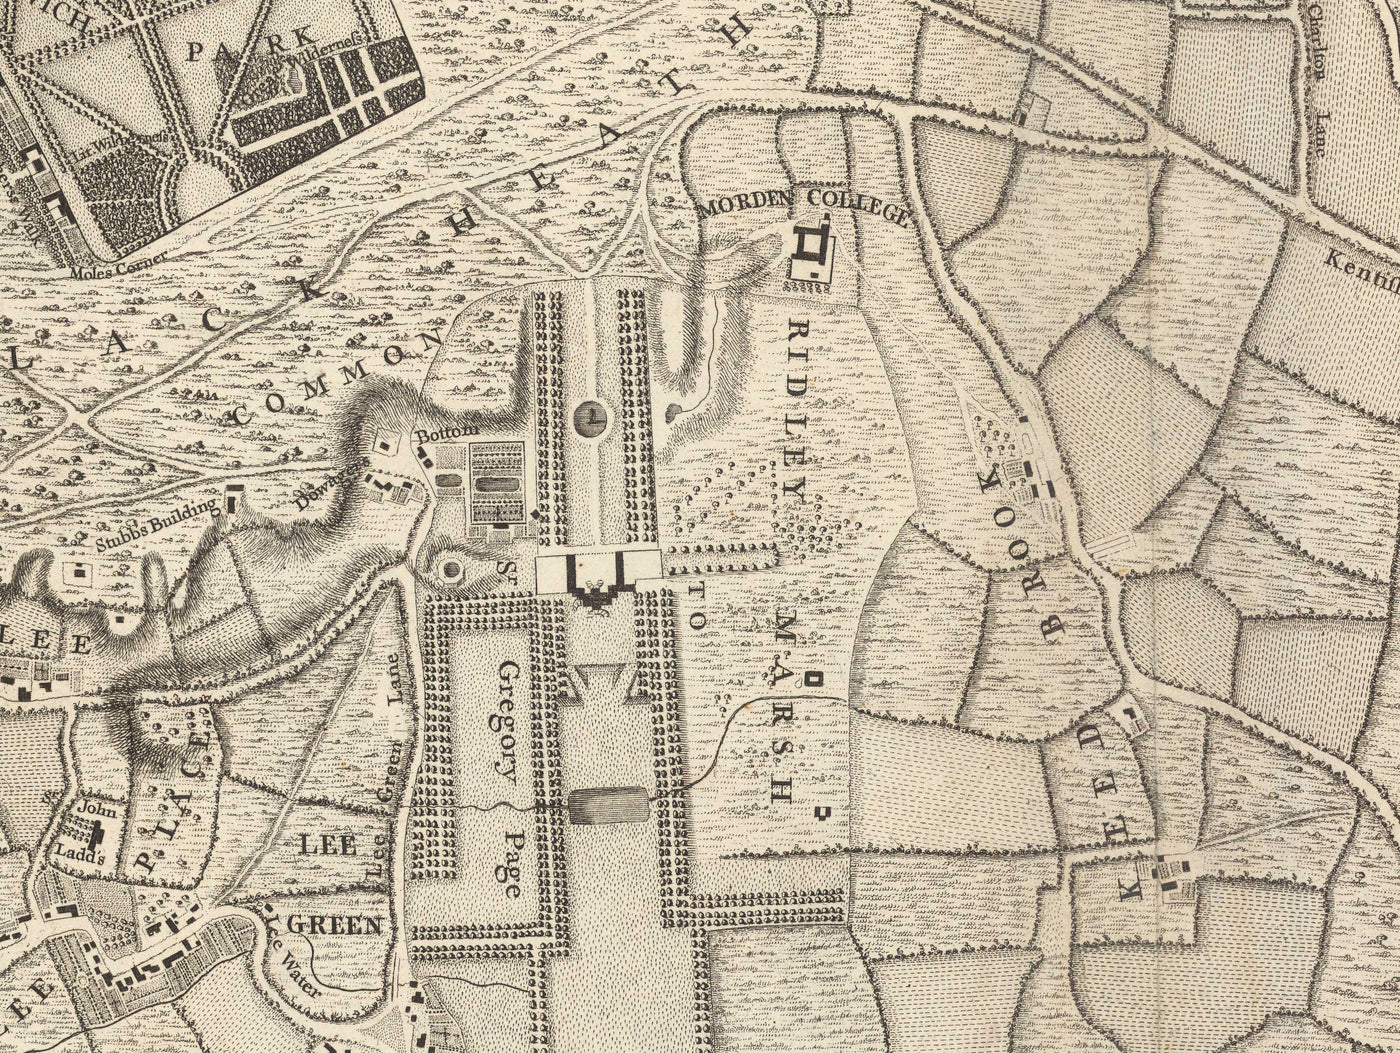 Old Map of South East London in 1746 by John Rocque - Lewisham, Woolwich, Greenwich, Eltham, Deptford, SE8, SE14, SE10, SE7, SE3, SE4, SE13